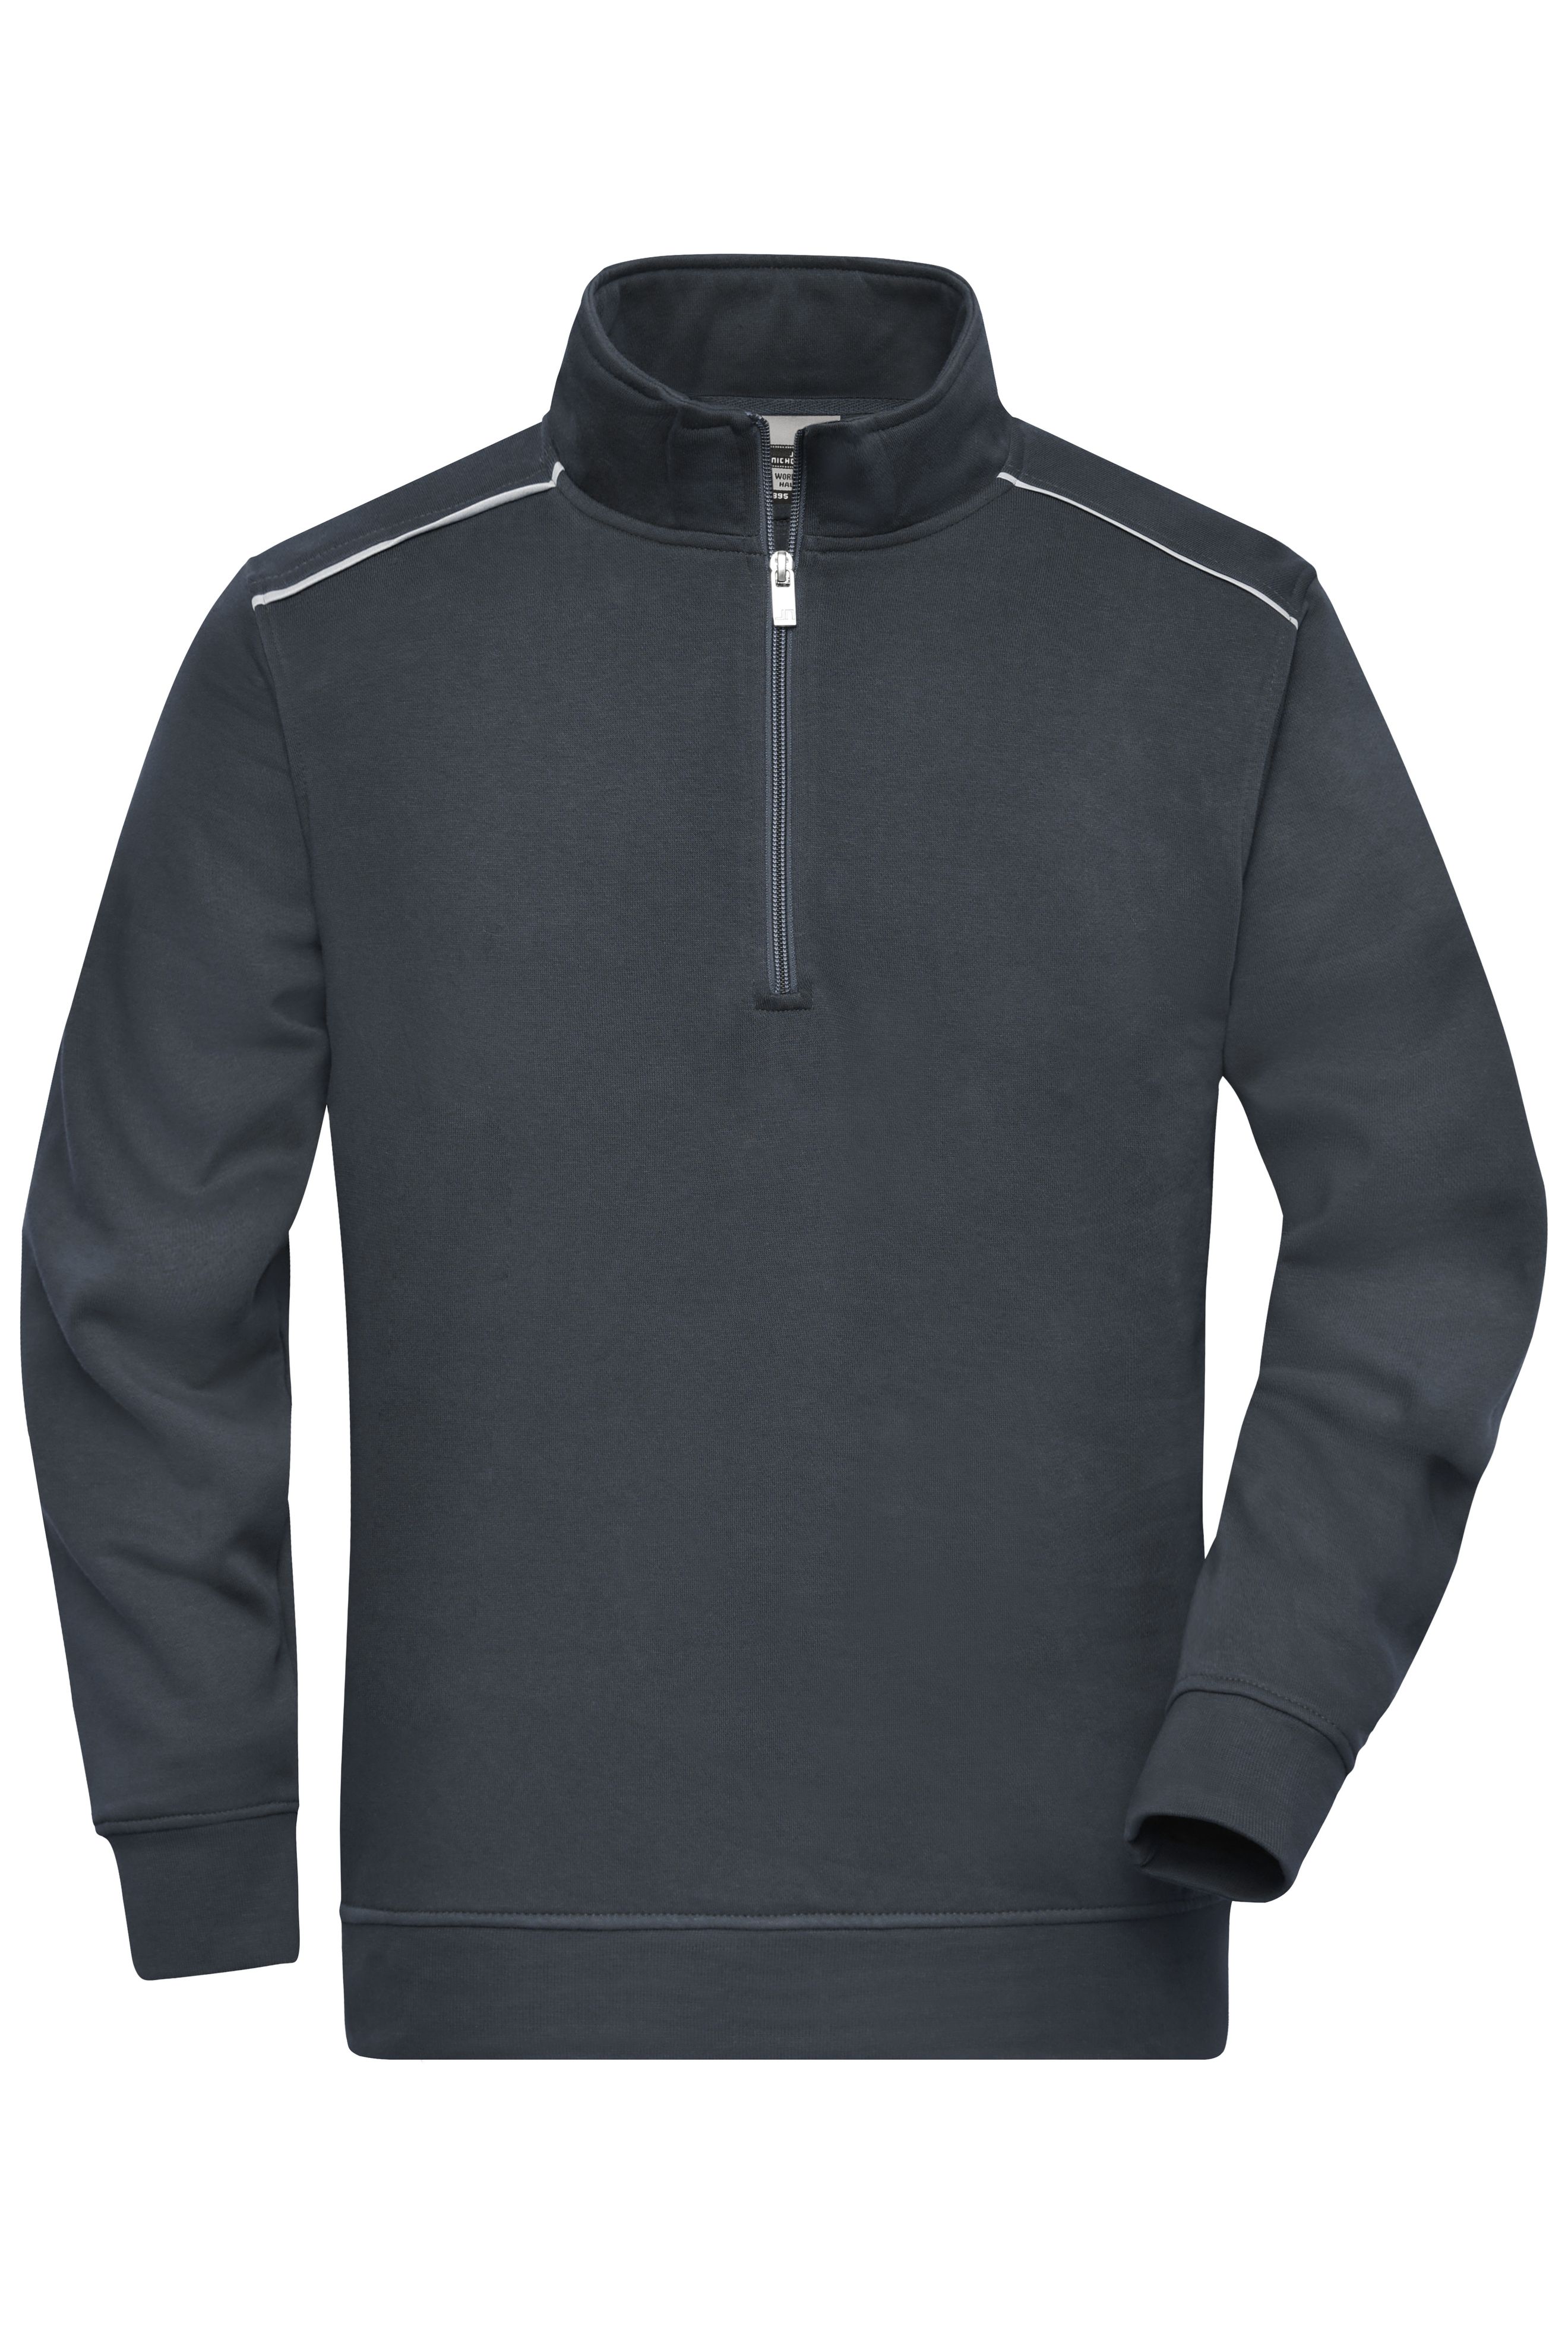 Workwear Half-Zip Sweat - SOLID - JN895 Sweatshirt mit Stehkragen, Reißverschluss und Kontrastpaspel